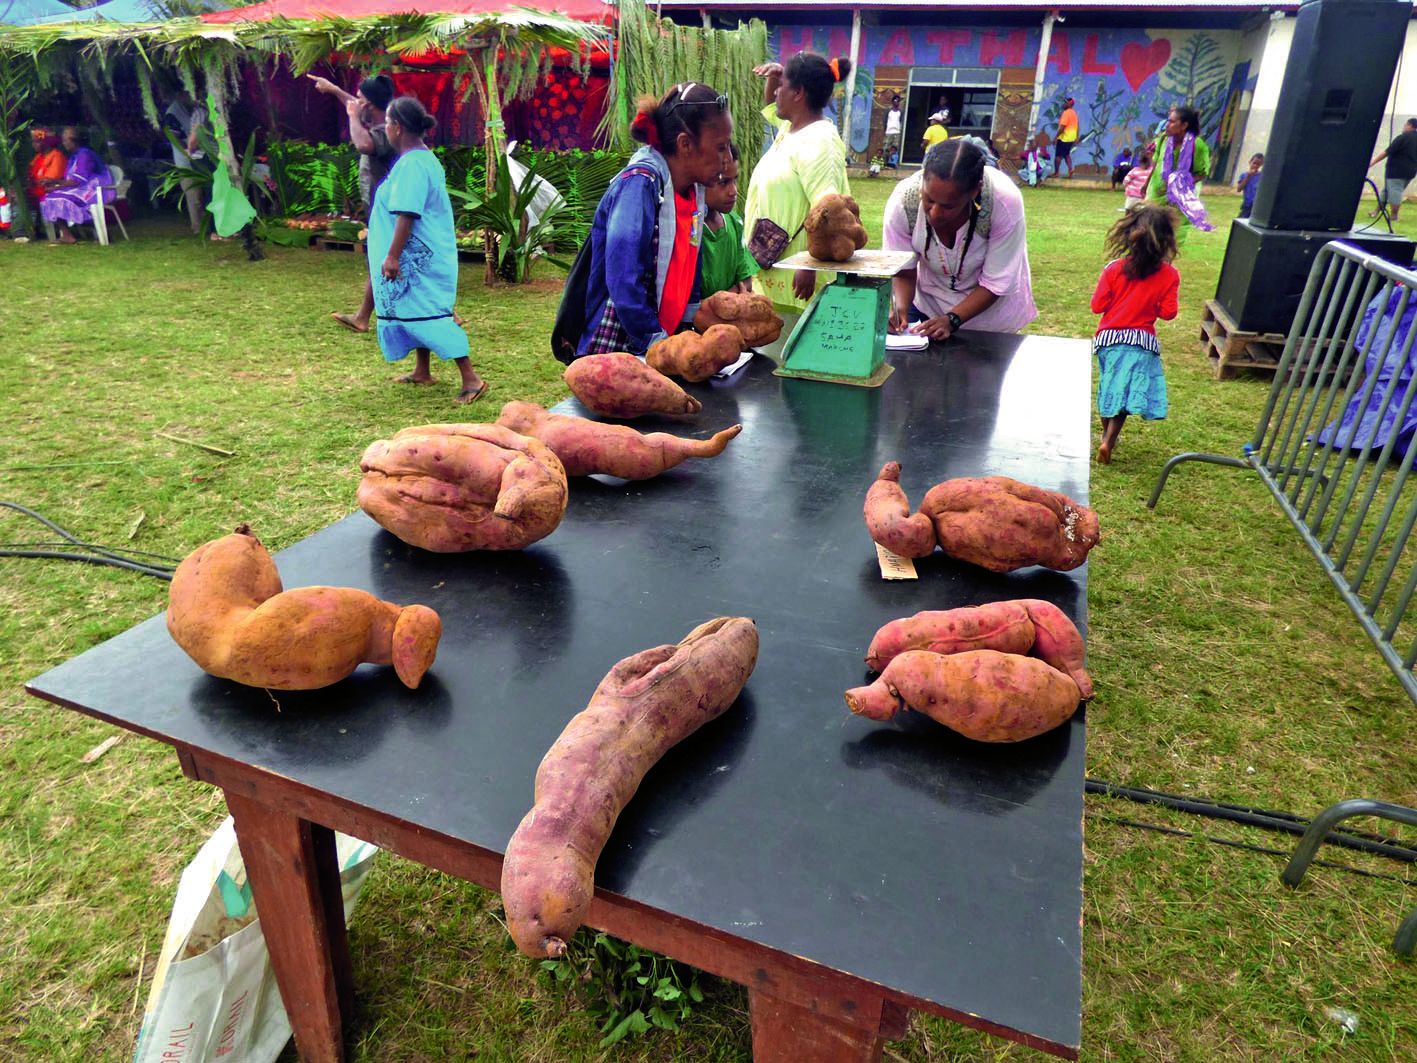 A la pesée de la plus grosse patate, c’est Thierry Wahiobe qui l’a emportée avec un tubercule  de 8,3 kilos. Le prix du stand ayant la plus grosse production a été décerné au stand Wahiobe avec 254 kilos.